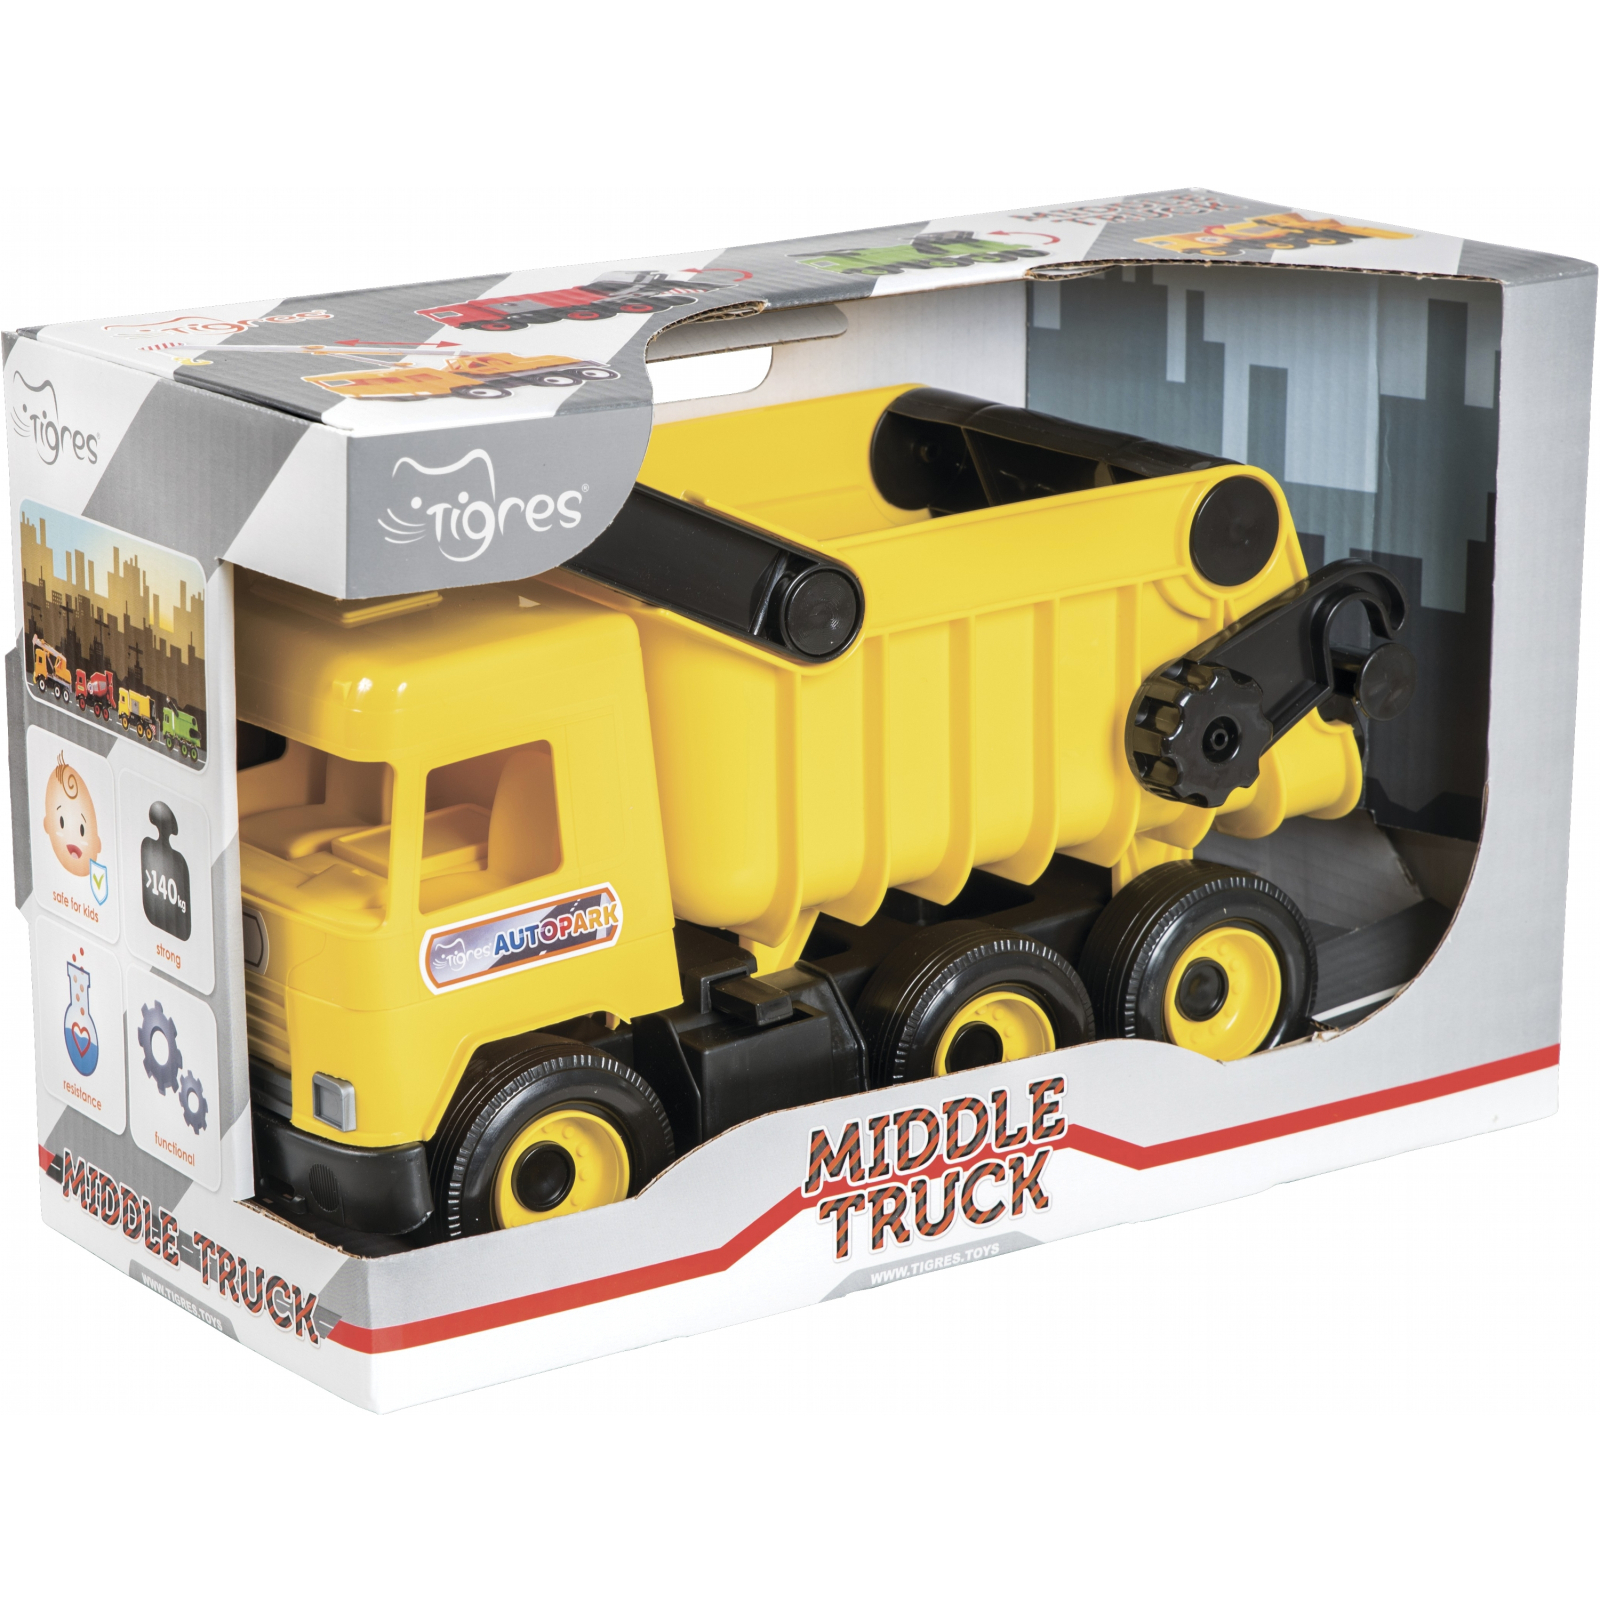 Спецтехника Tigres Авто "Middle truck" самосвал (желтый) в коробке (39490) изображение 2